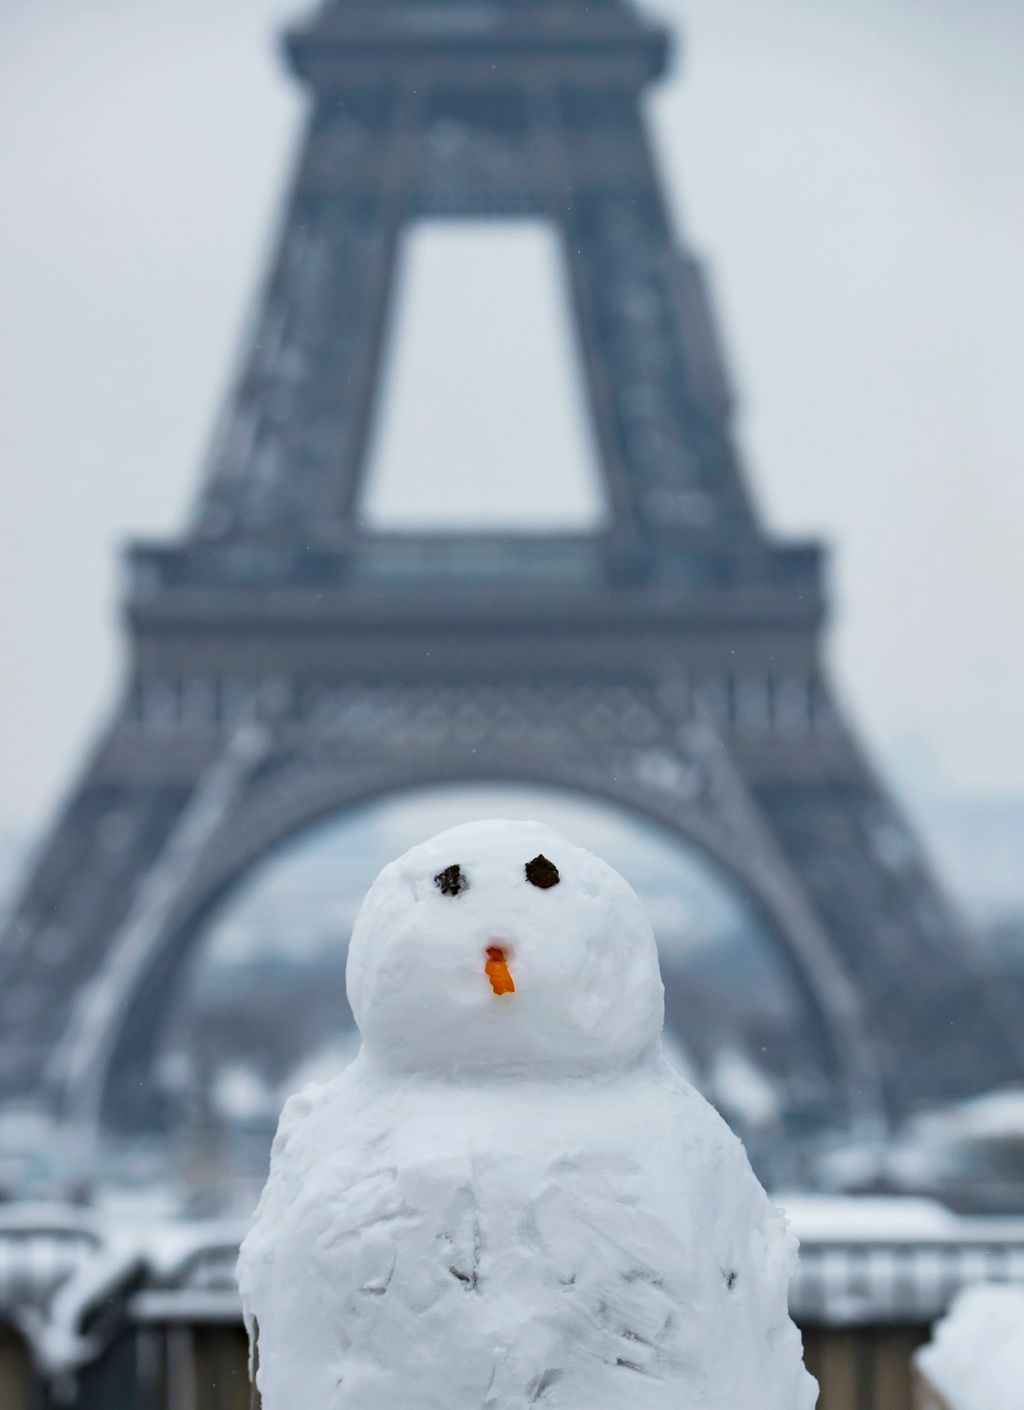 Párizs, 2018. február 7.
Hóember az Eiffel-toronnyal Párizsban 2018. február 7-én. (MTI/EPA/Ian Langsdon) 